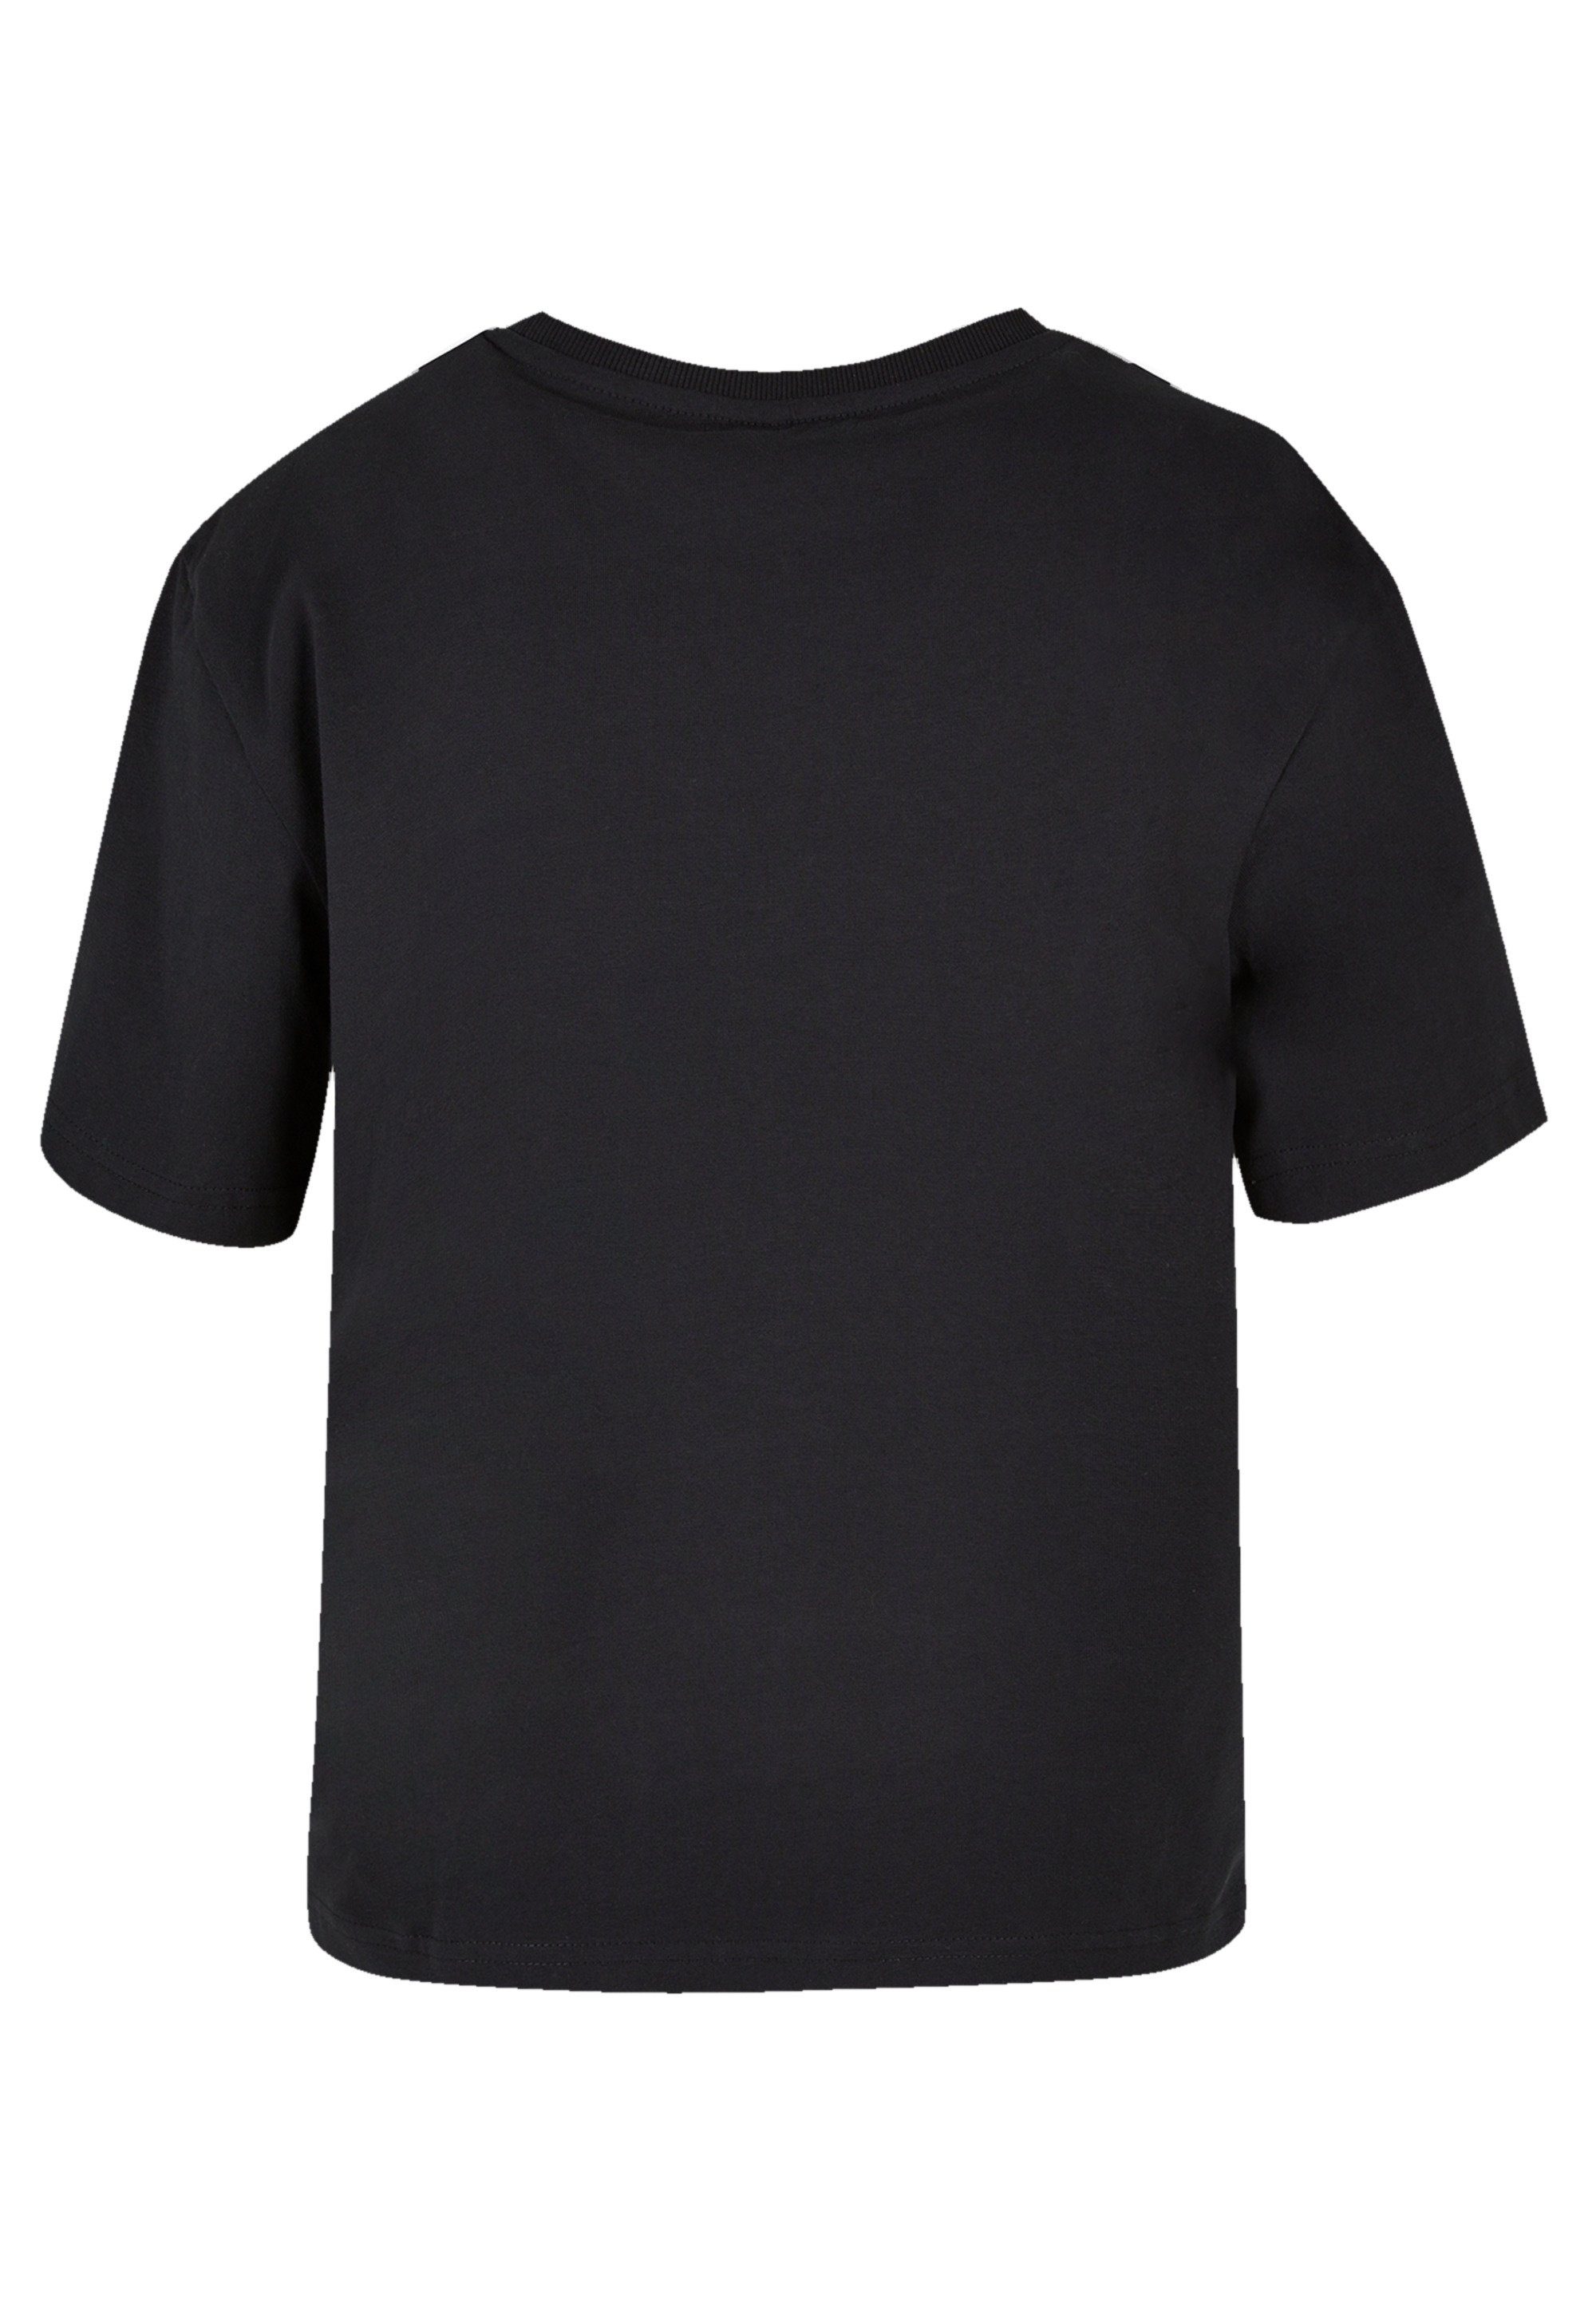 F4NT4STIC T-Shirt Disney König der Löwen Sundown Premium Qualität,  Komfortabel und vielseitig kombinierbar